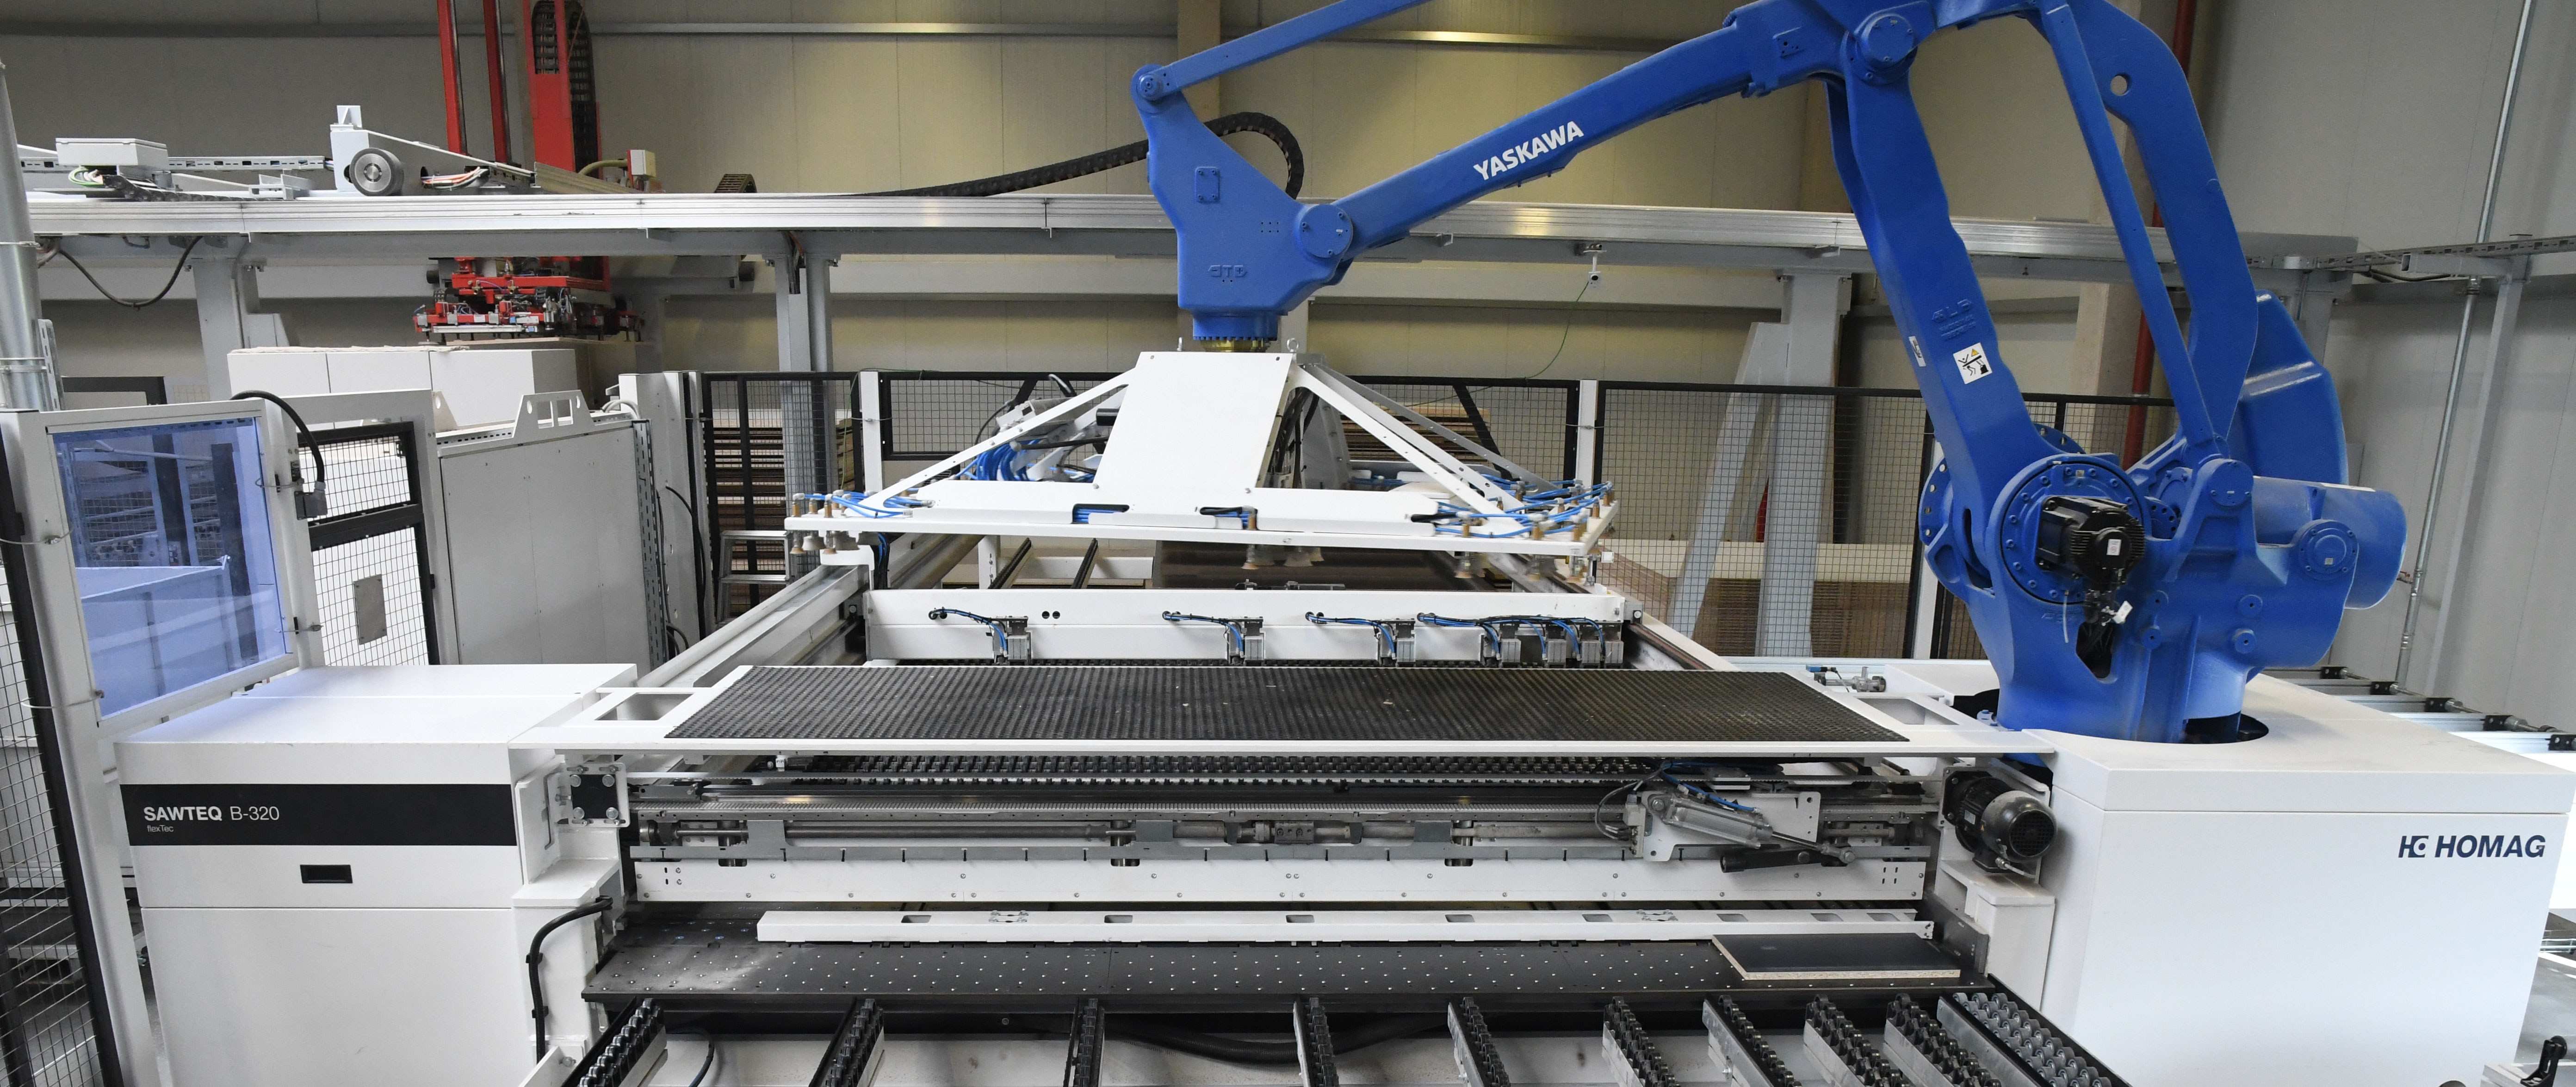 在 horatec 的单件批量生产中，几乎 100% 的切割都是由两台 SAWTEQ B-320 flexTec 型 HOMAG 机器人裁板锯完成的。